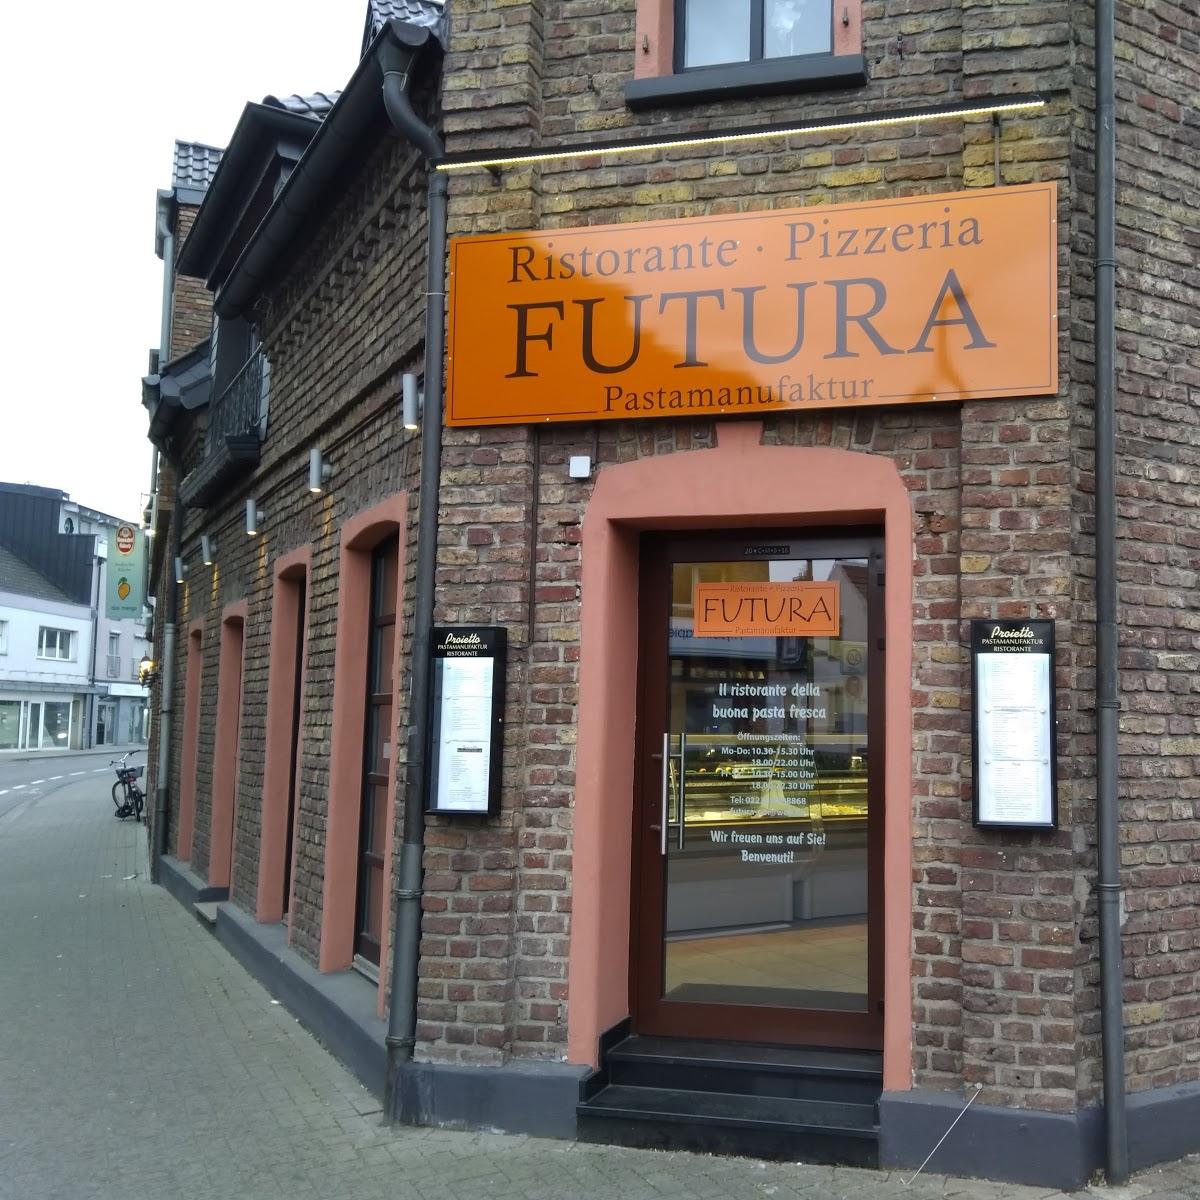 Restaurant "Ristorante Pizzeria Futura Pastamanufaktur" in Pulheim